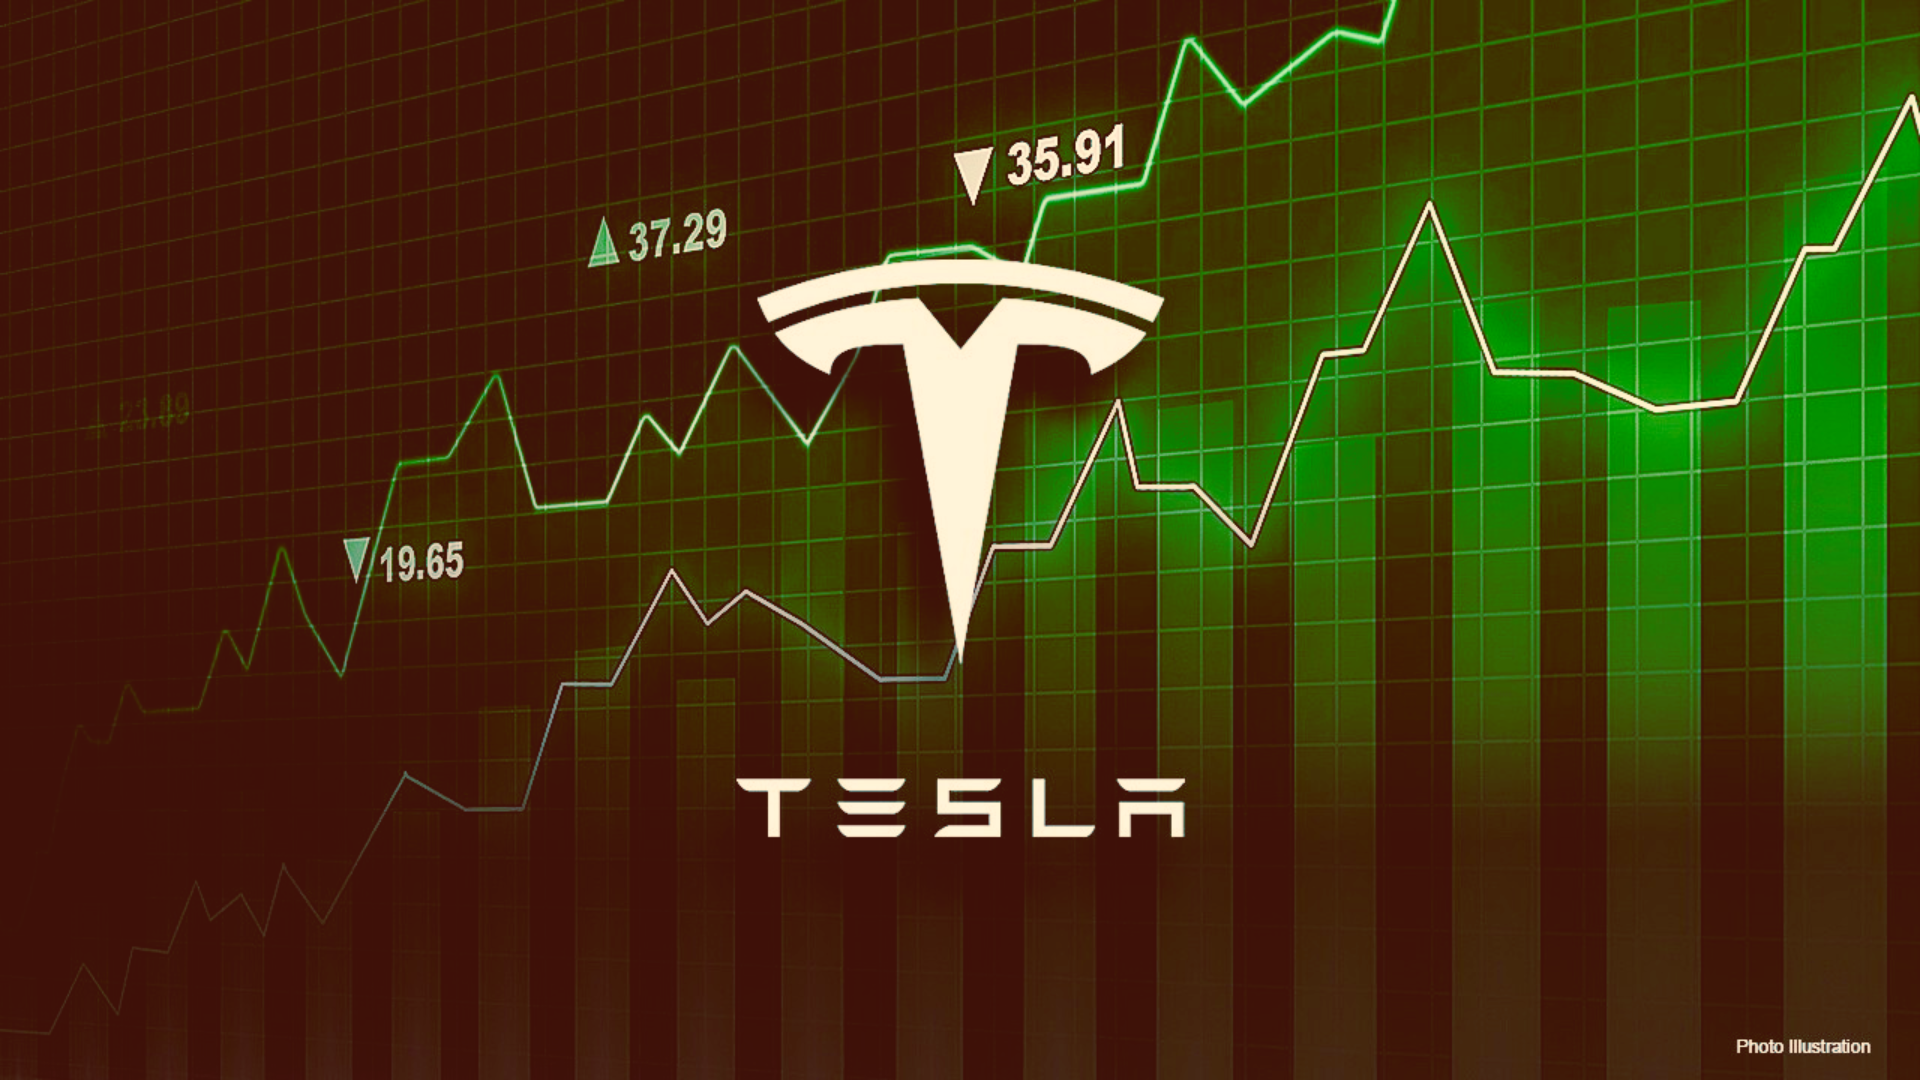 Musk’s Vow Of ‘Affordable’ Tesla Models Boosts Market Confidence